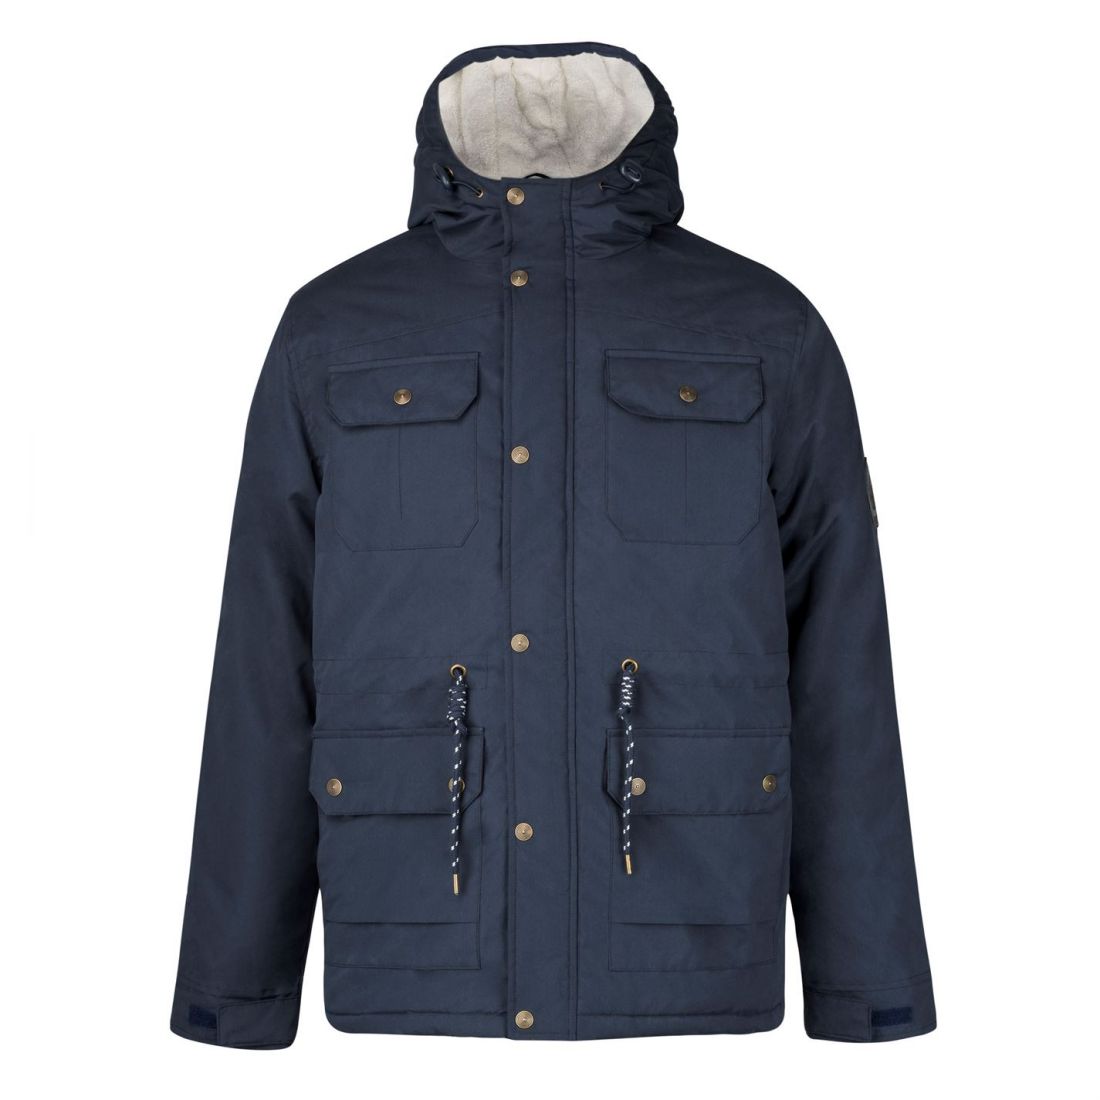 Lee Cooper Hooded Parka Jacket Mens Gents Coat Top Zip Zipped Warm | eBay